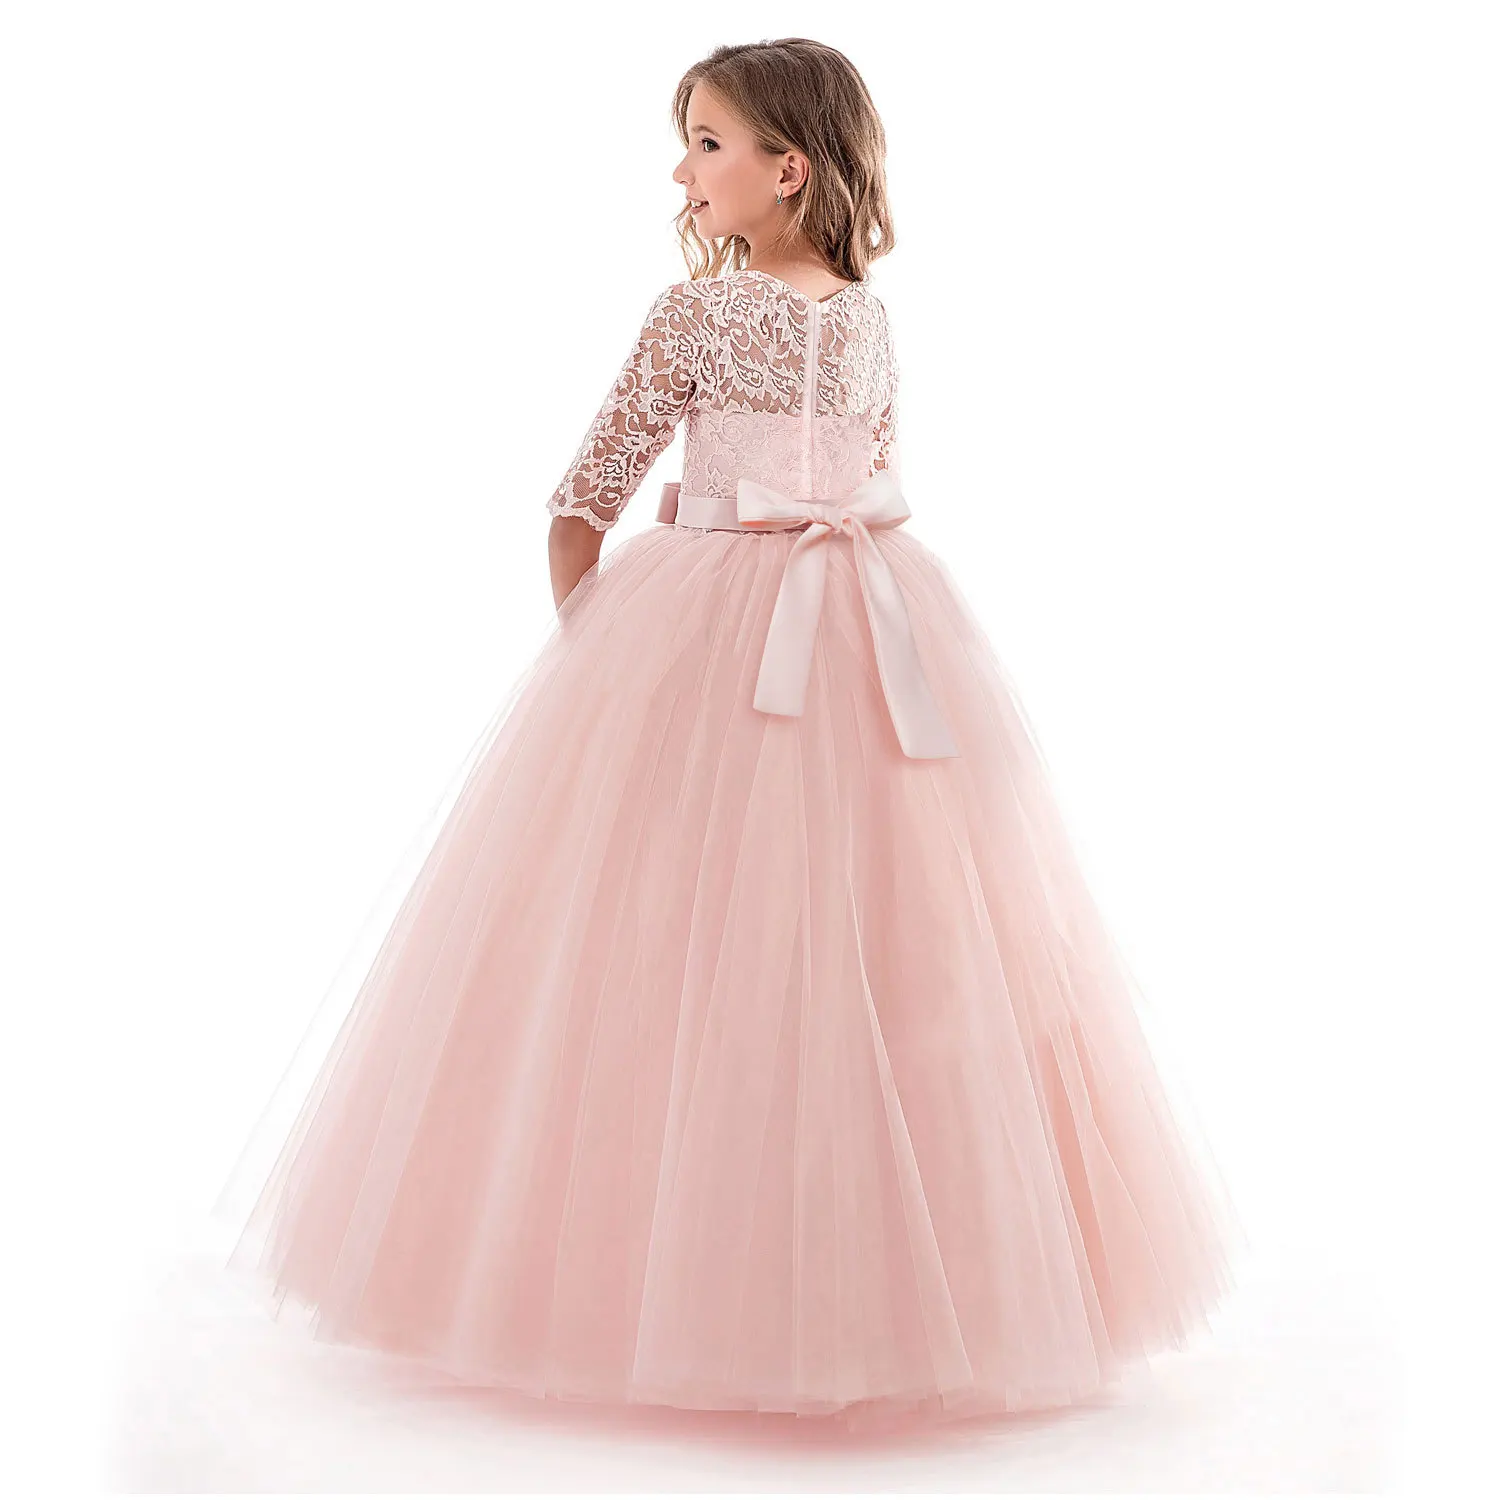 WEPBEL/детские кружевные платья для девочек; вечерние платья принцессы с цветочным узором для девочек; торжественные кружевные тюлевые платья для свадьбы; платья для первого причастия